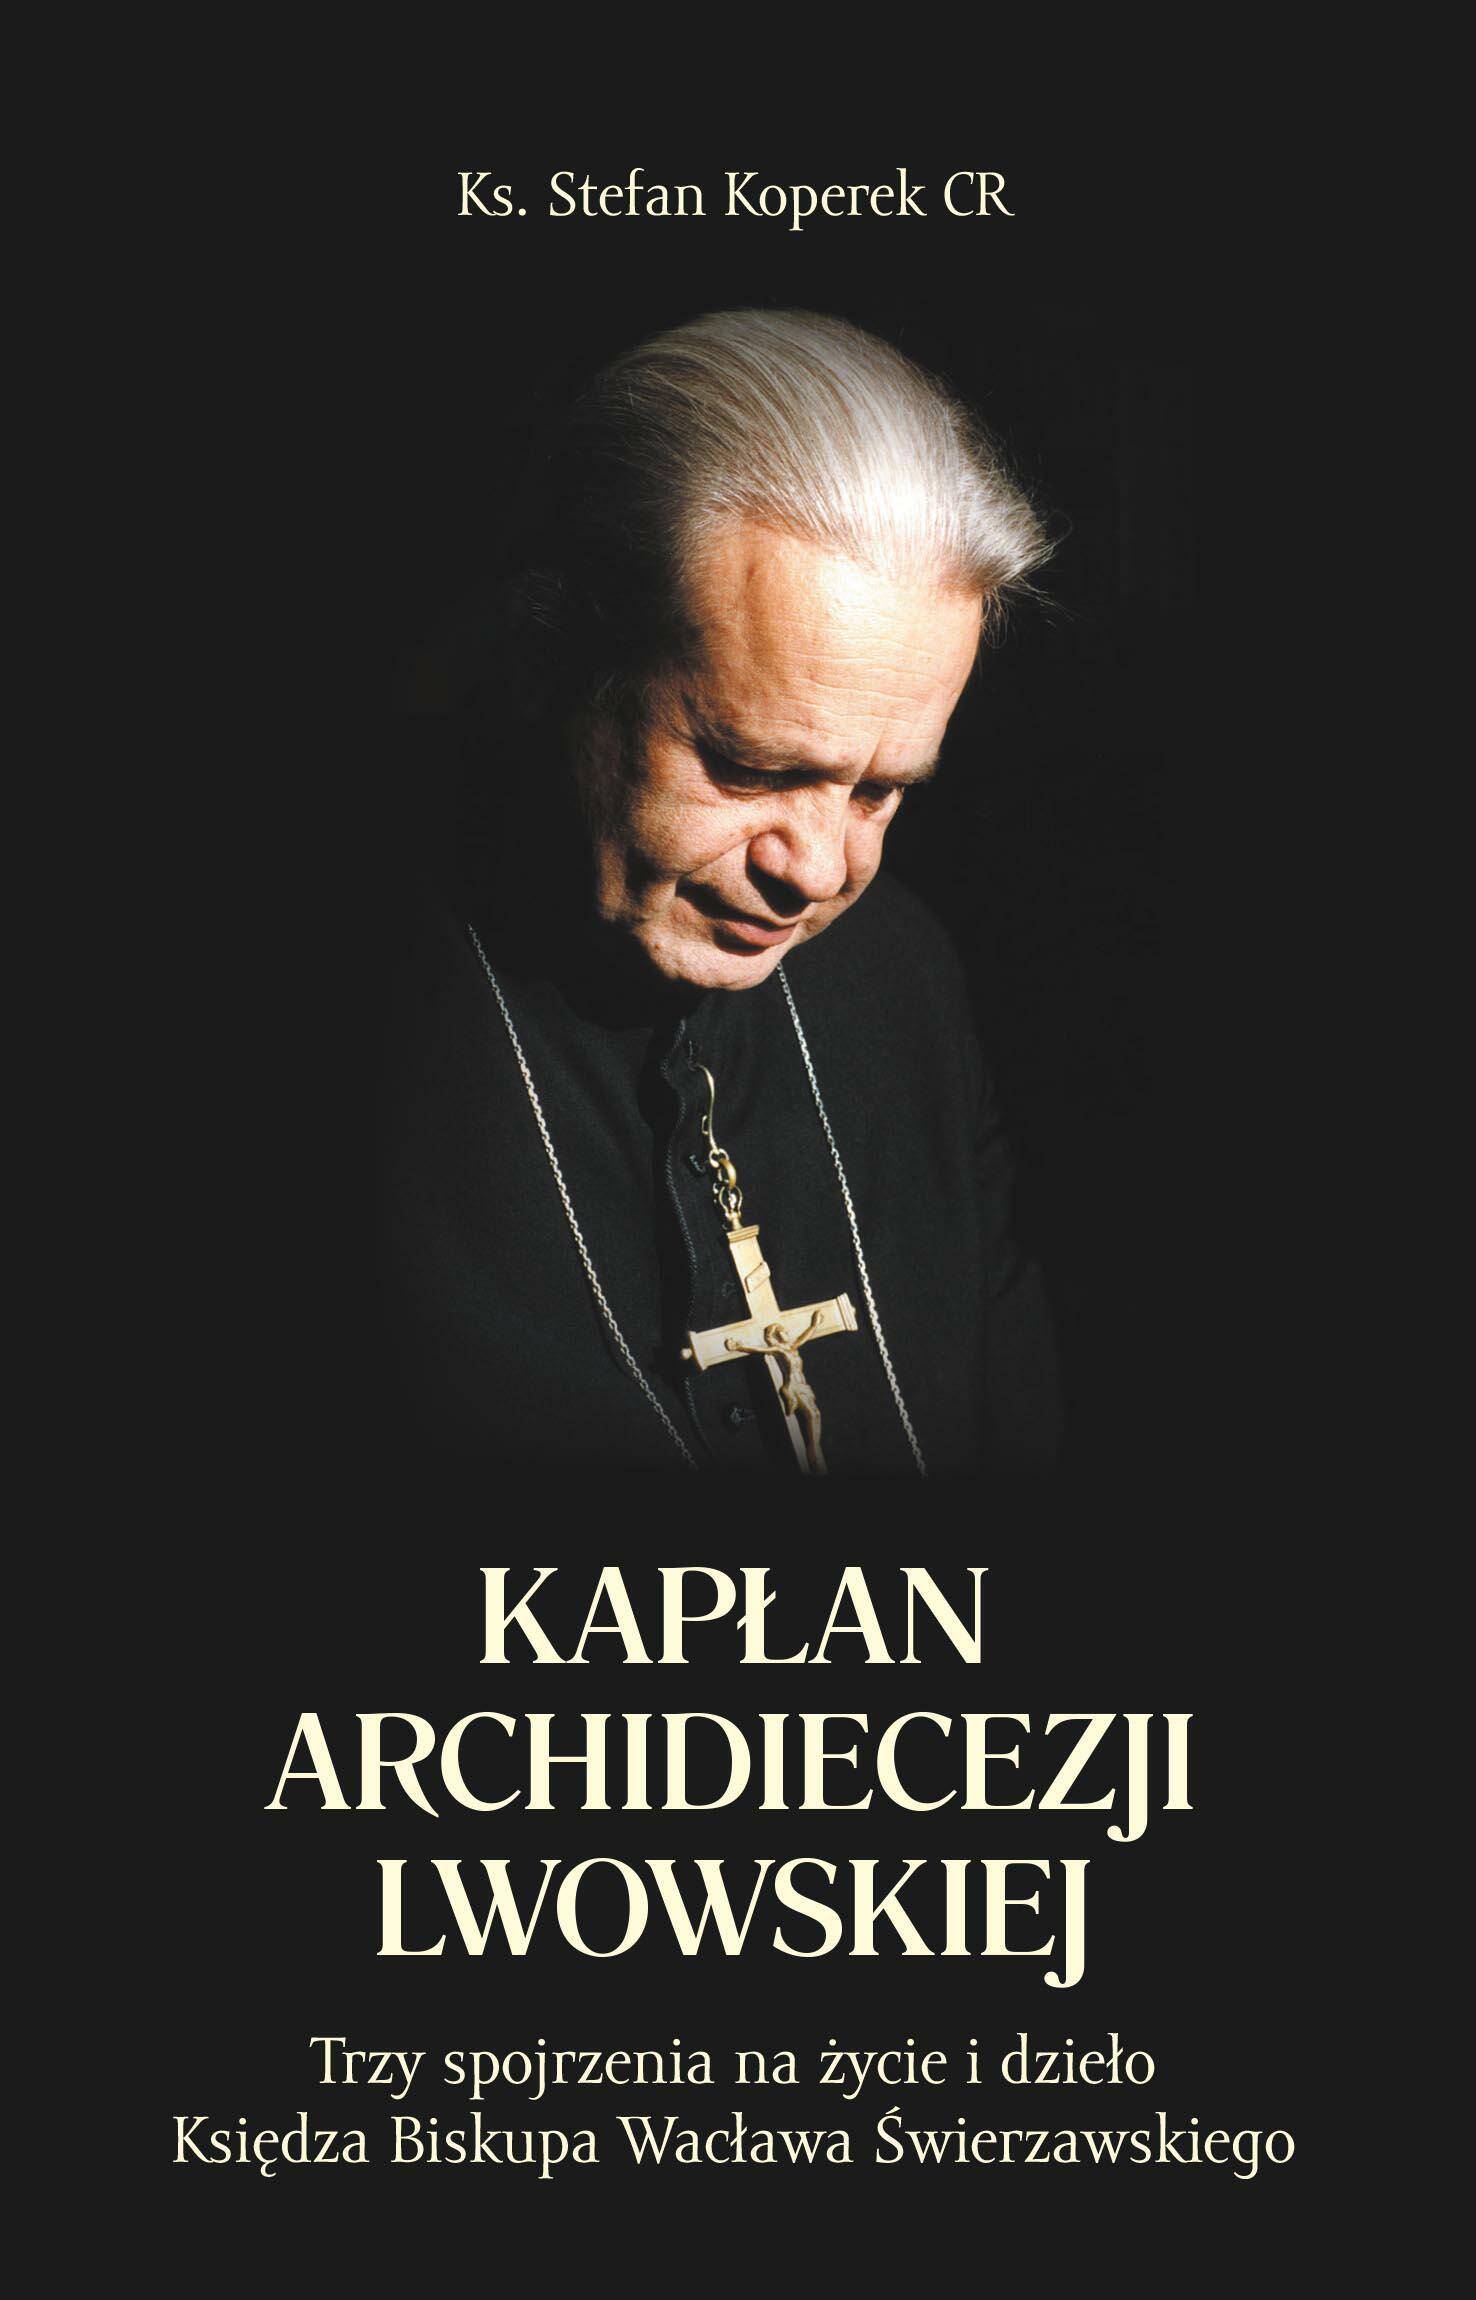 Kapłan Archidiecezji Lwowskiej (Photo 1)